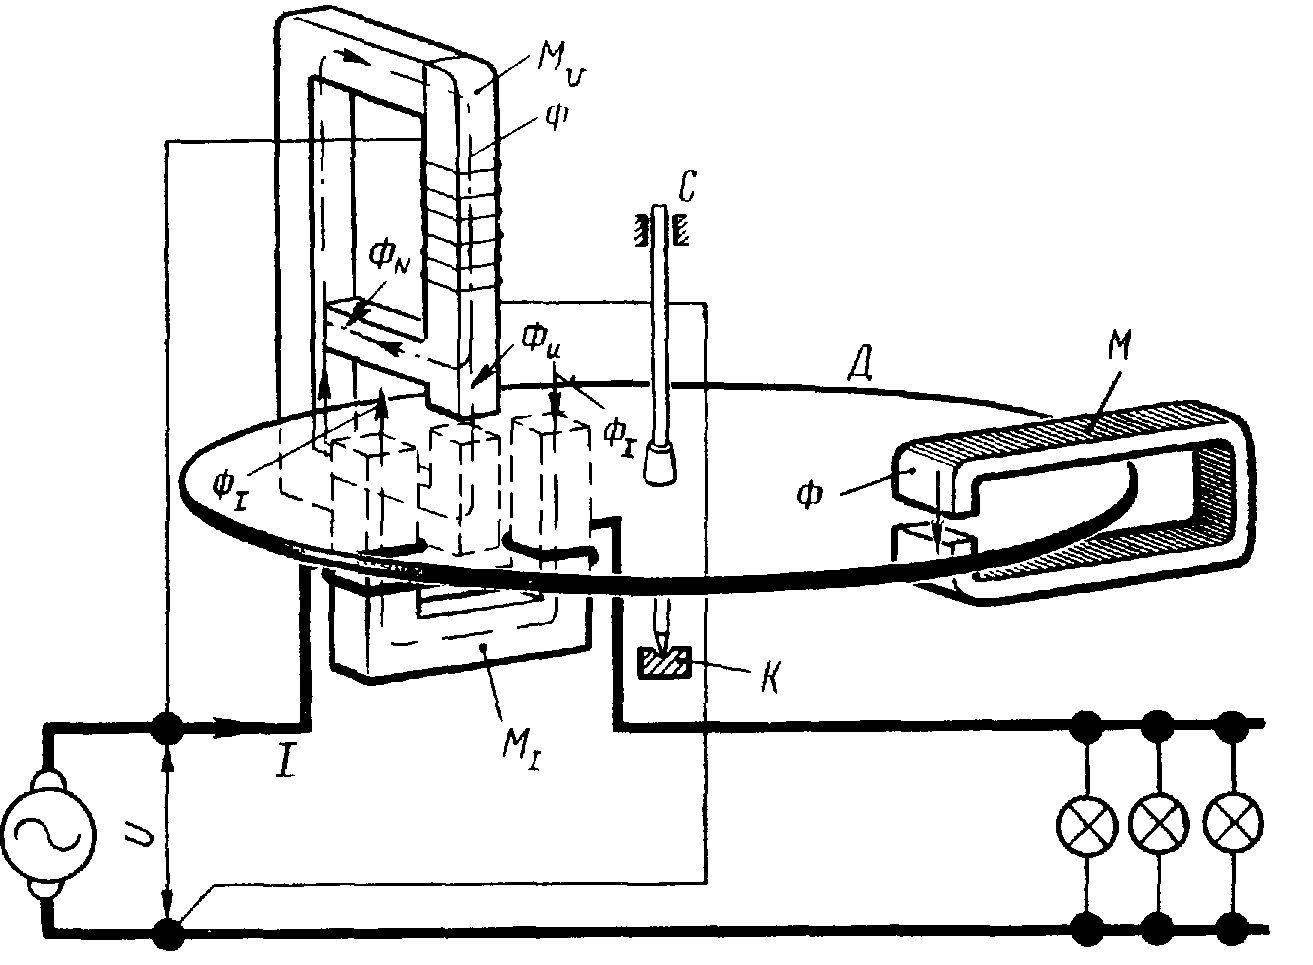 Схема подключения однофазного электросчетчика в частном доме и квартире (пример для счетчиков меркурий)